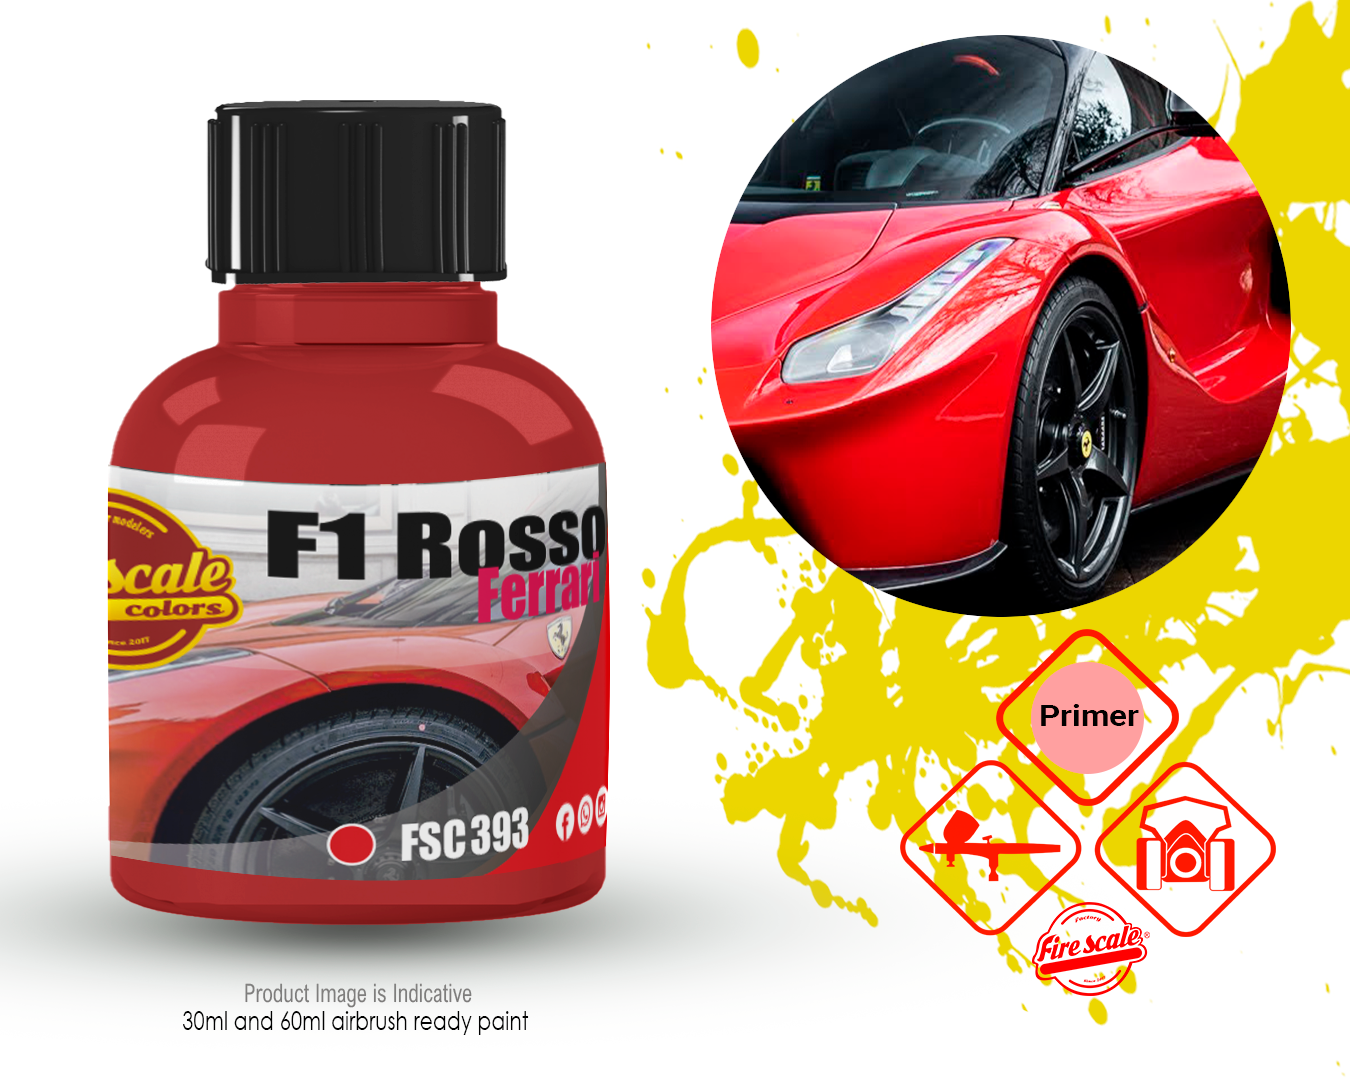 F1 Rosso Ferrari